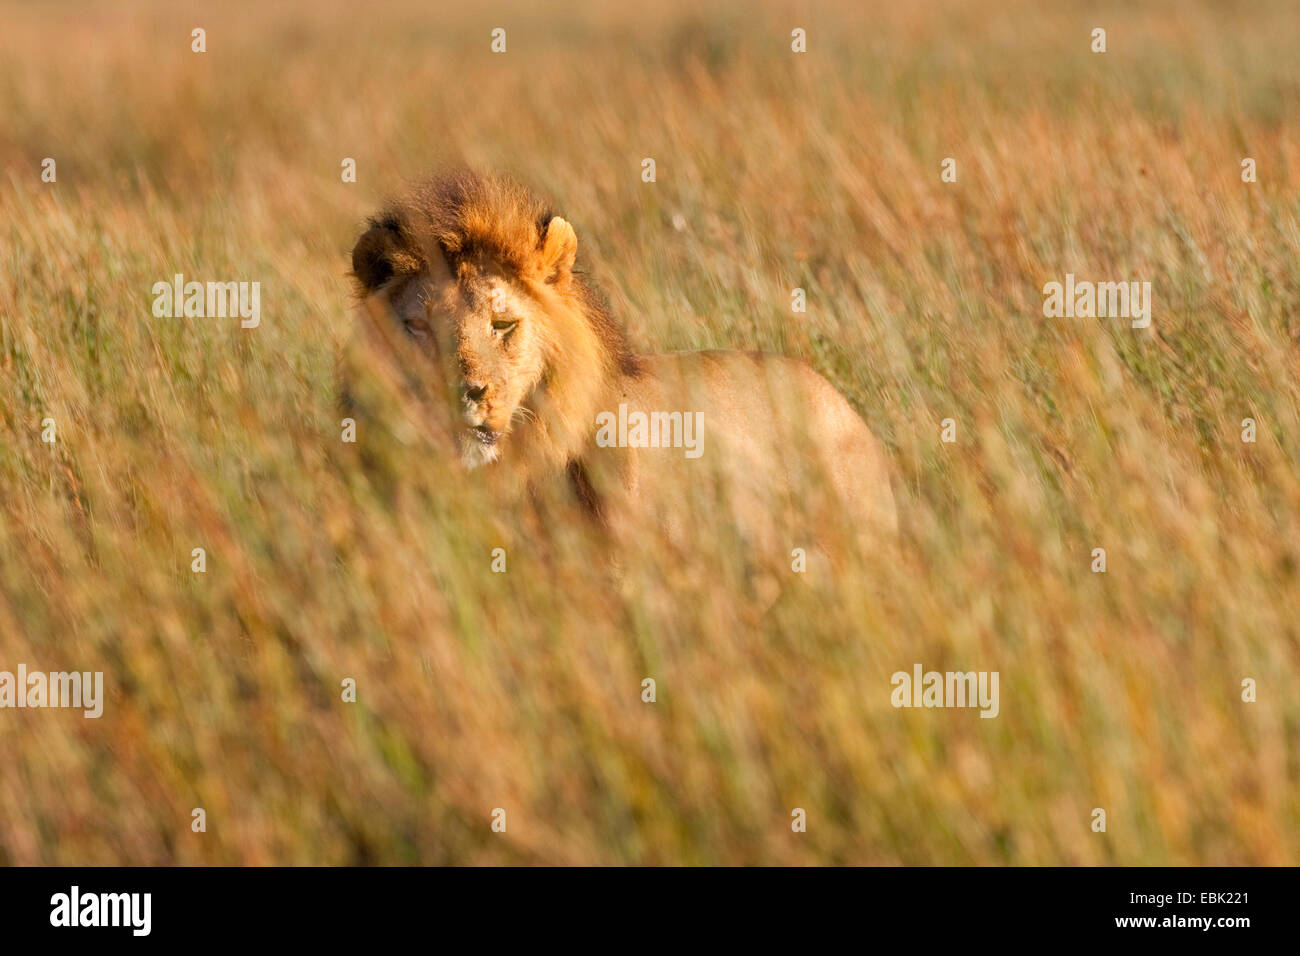 lion (Panthera leo), male lying on grass, Tanzania, Serengeti NP Stock Photo